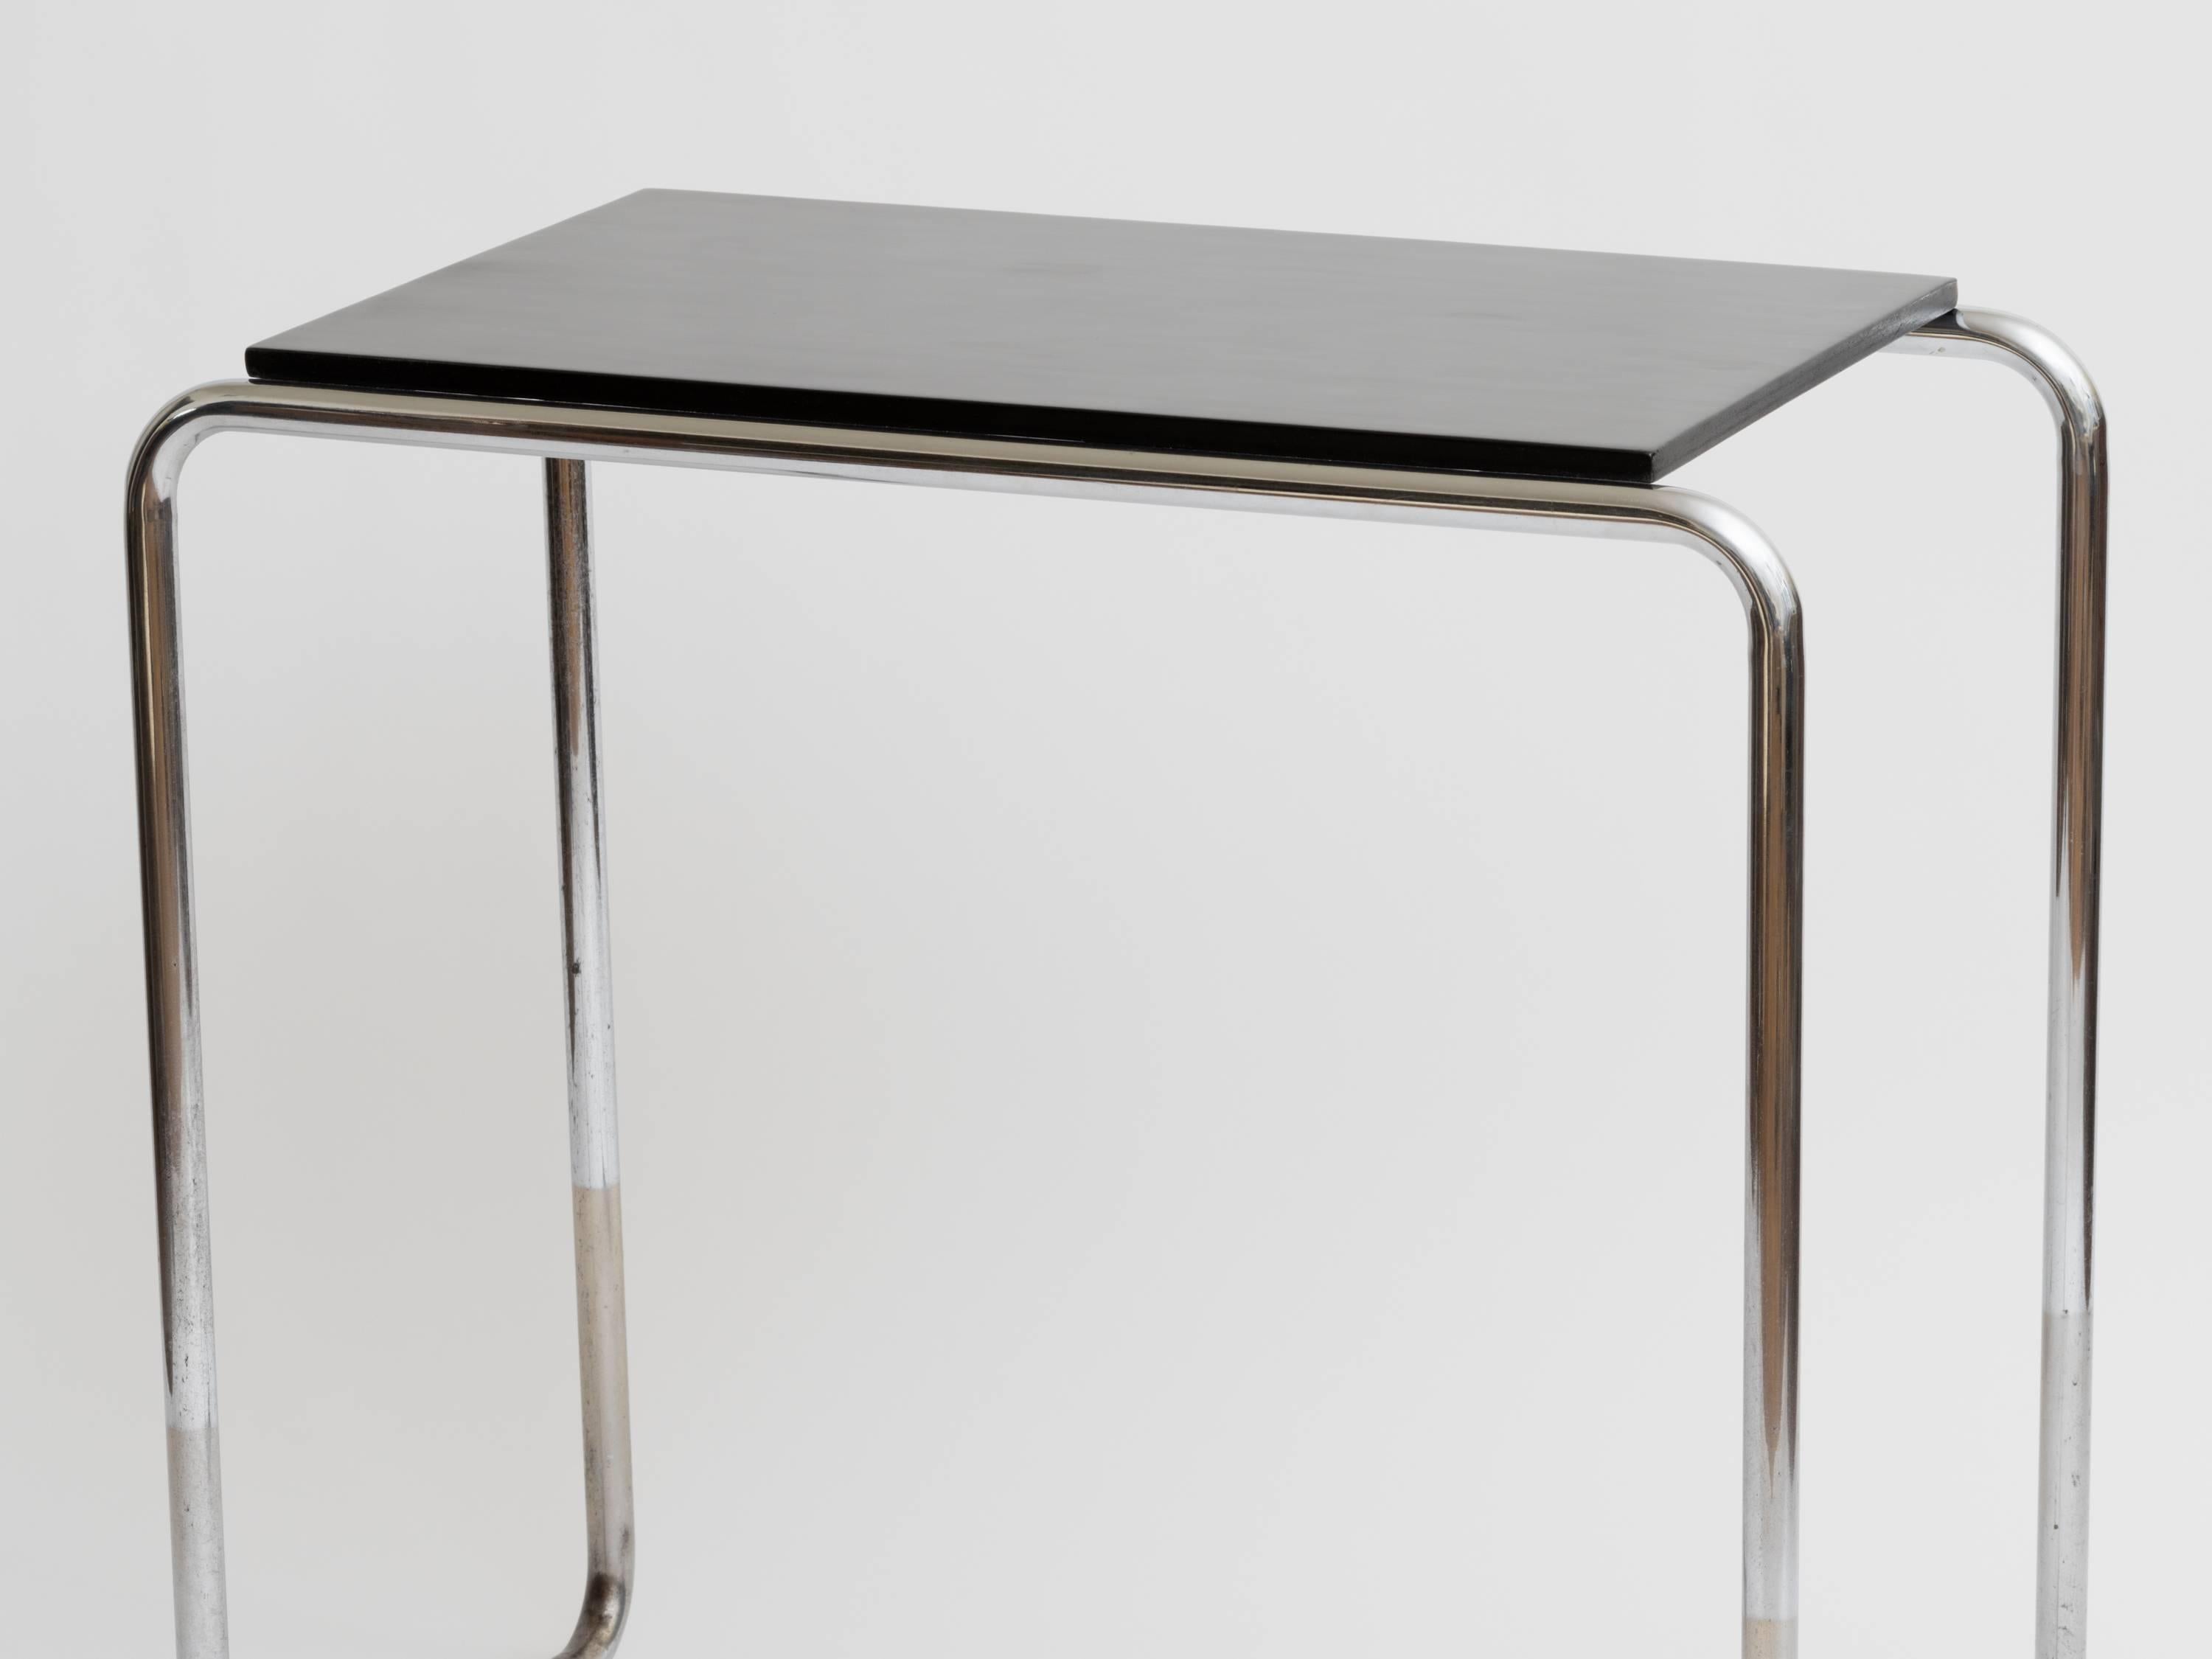 Original schwarz lackierter Tisch aus den 1930er Jahren mit Metallrohrbeinen im Stil von Marcel Breuer. Vielfältige Verwendungsmöglichkeiten: Konsole, Bar, kleiner Schreibtisch oder Eitelkeit.